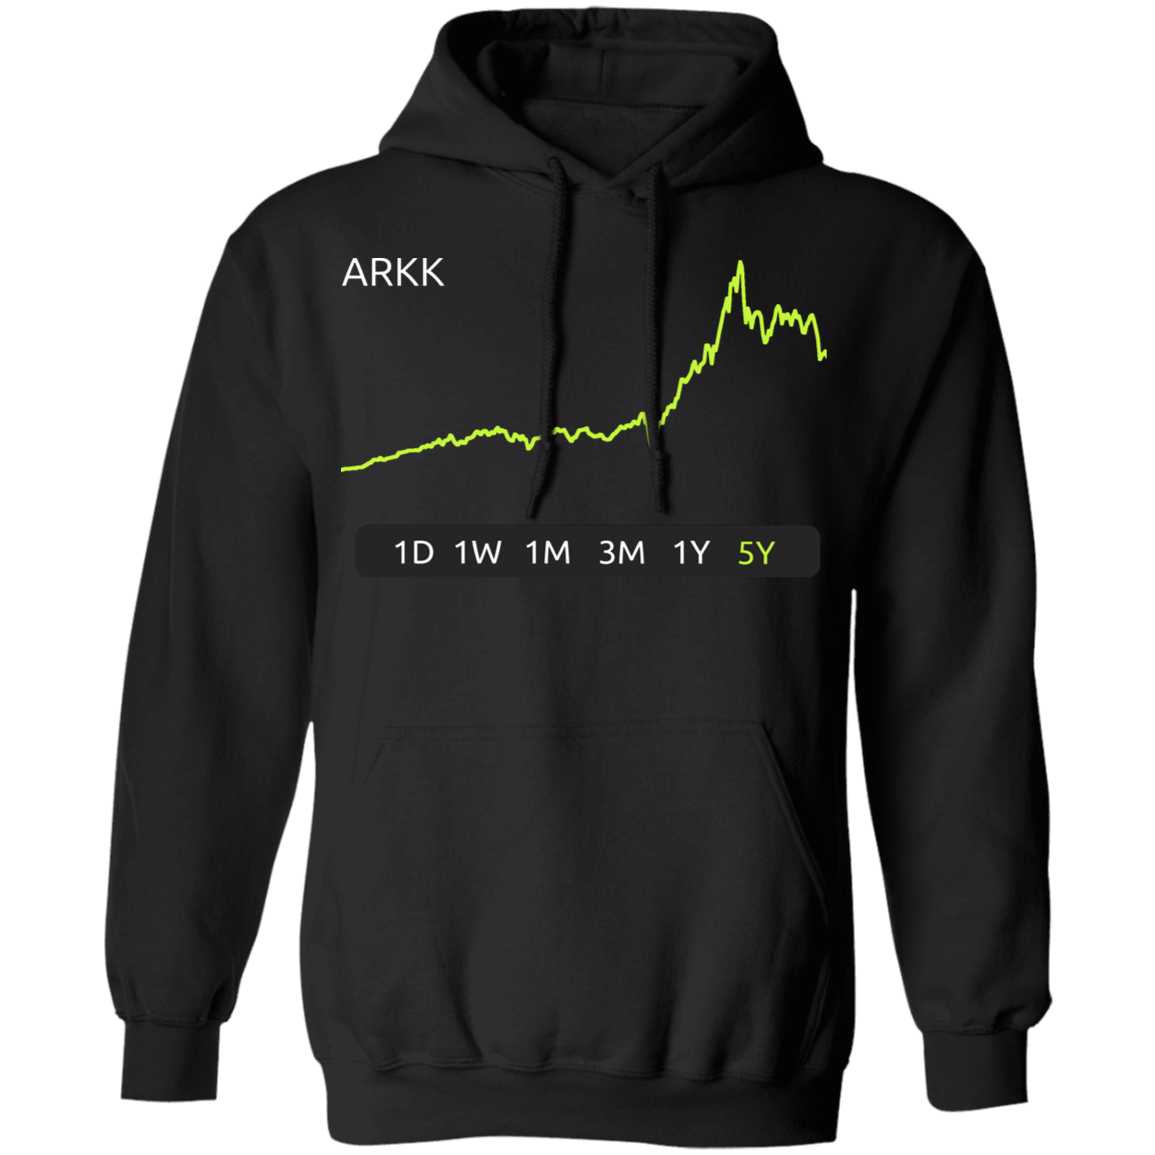 ARKK Stock 5Y Pullover Hoodie